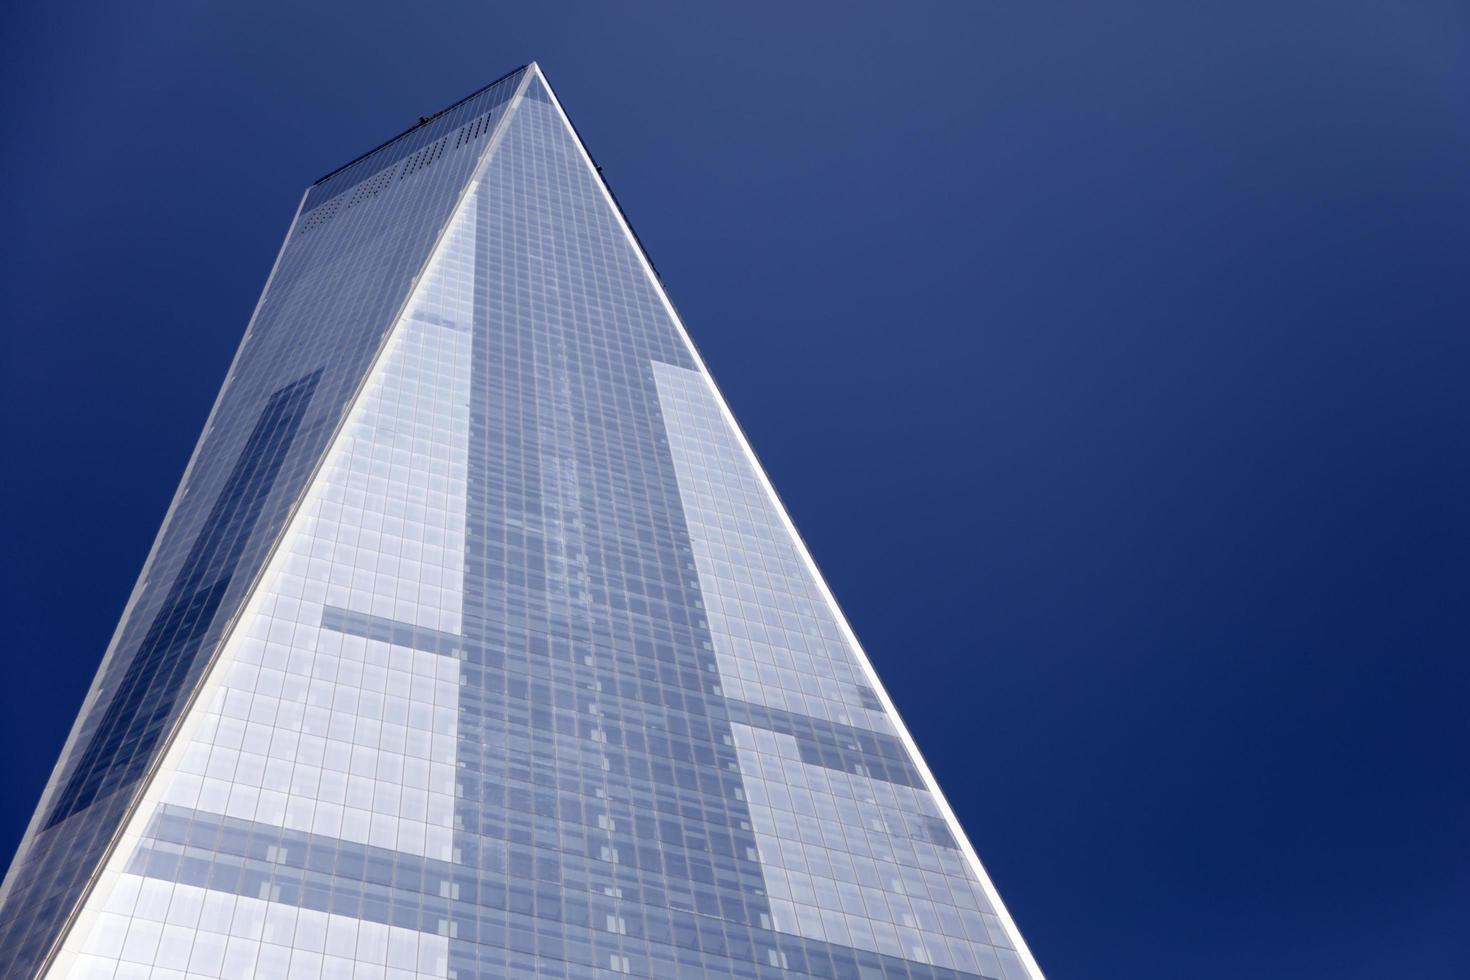 Nueva York, Estados Unidos, 30 de agosto de 2017 - Detalle de One World Trade Center en Nueva York. con 541m es el edificio más alto del hemisferio occidental. foto